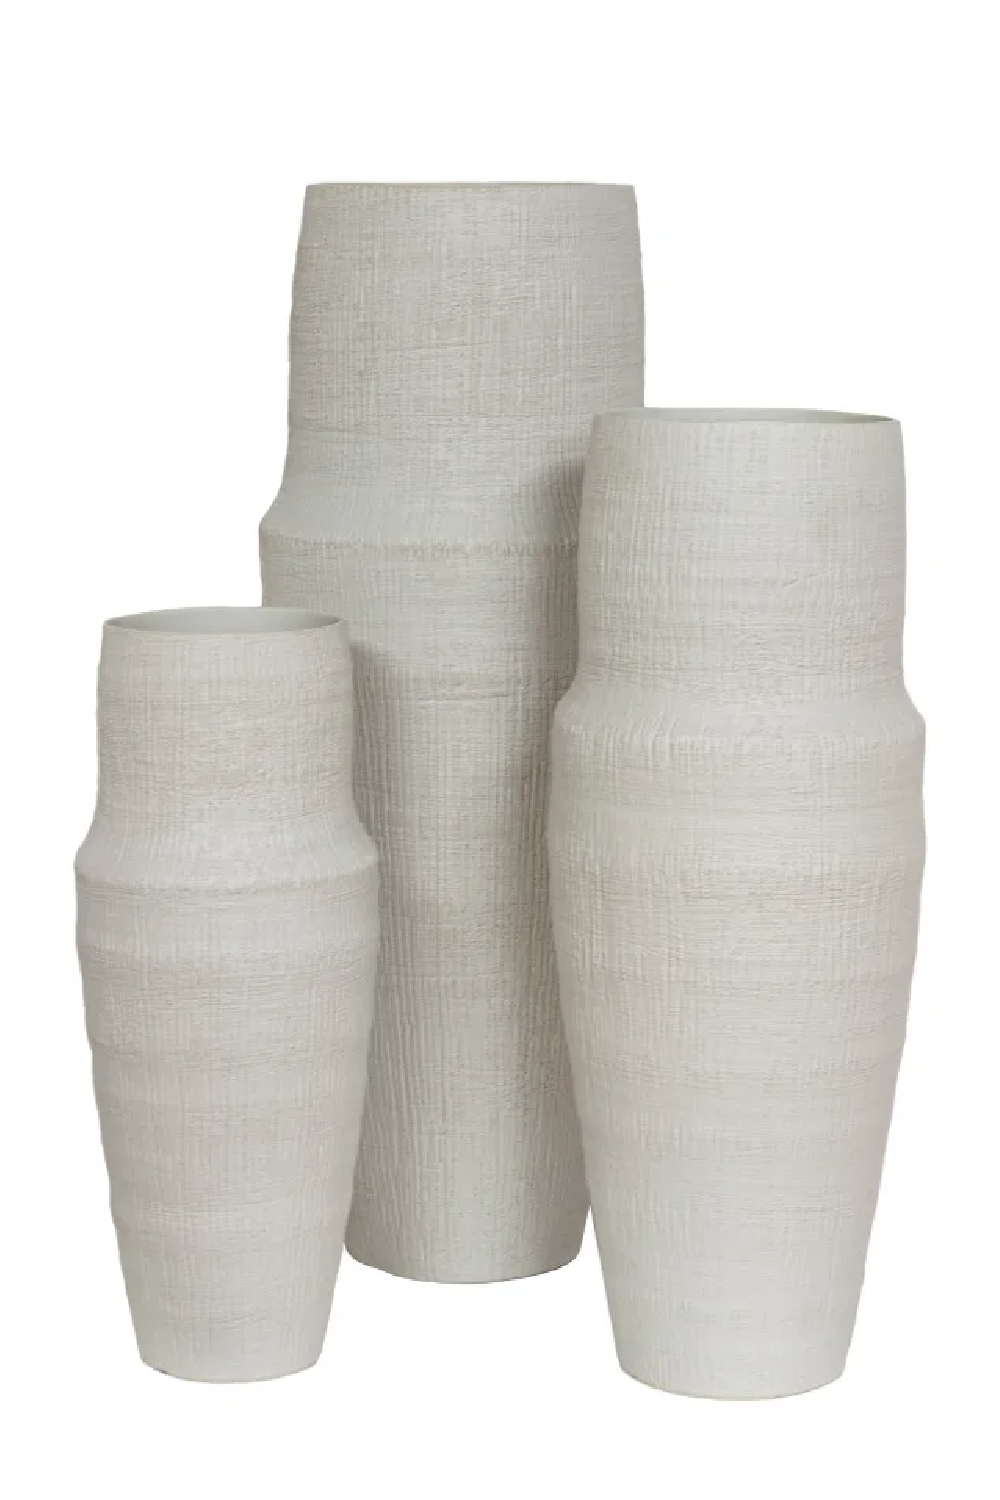 Rustic Ceramic Vase | Dome Deco | Oroa.com